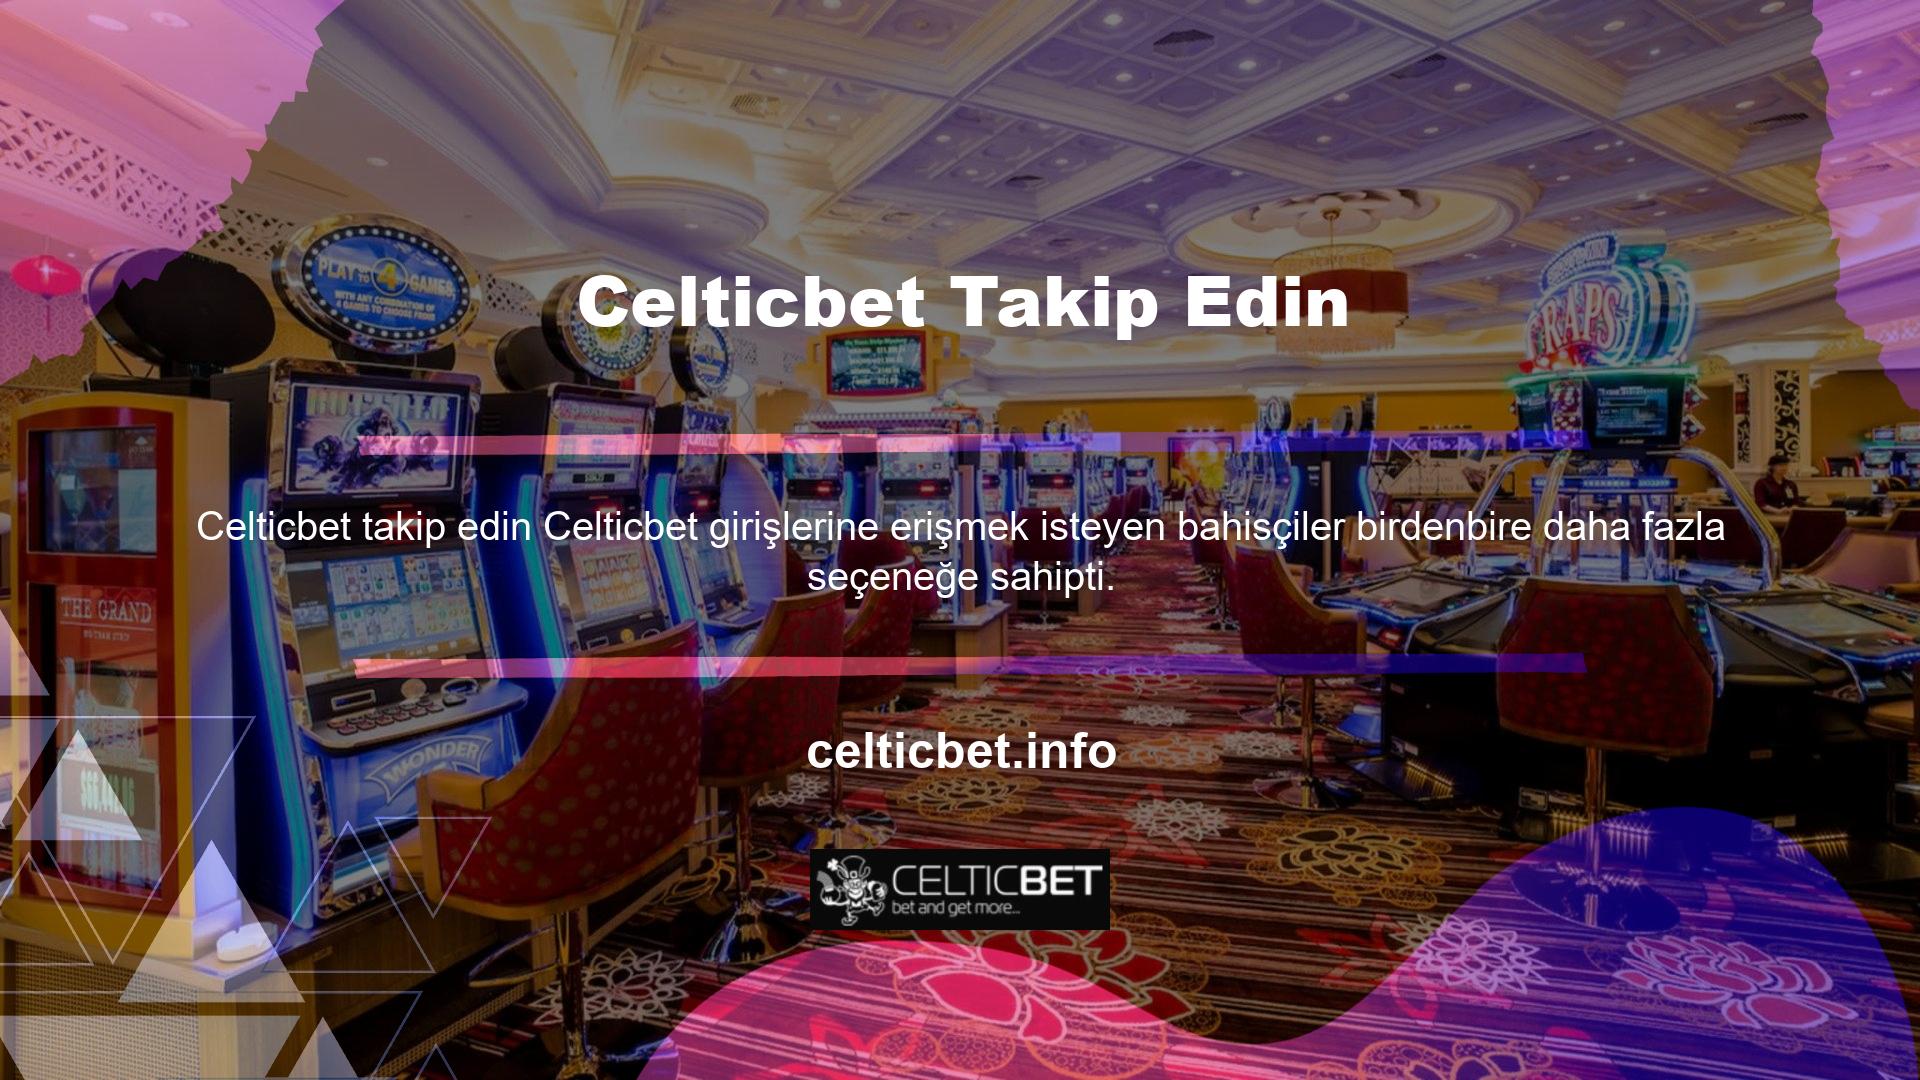 Celticbet web sitesi, kullanıcıların mağdur olmaması için gerekli tüm önlemleri almaktadır